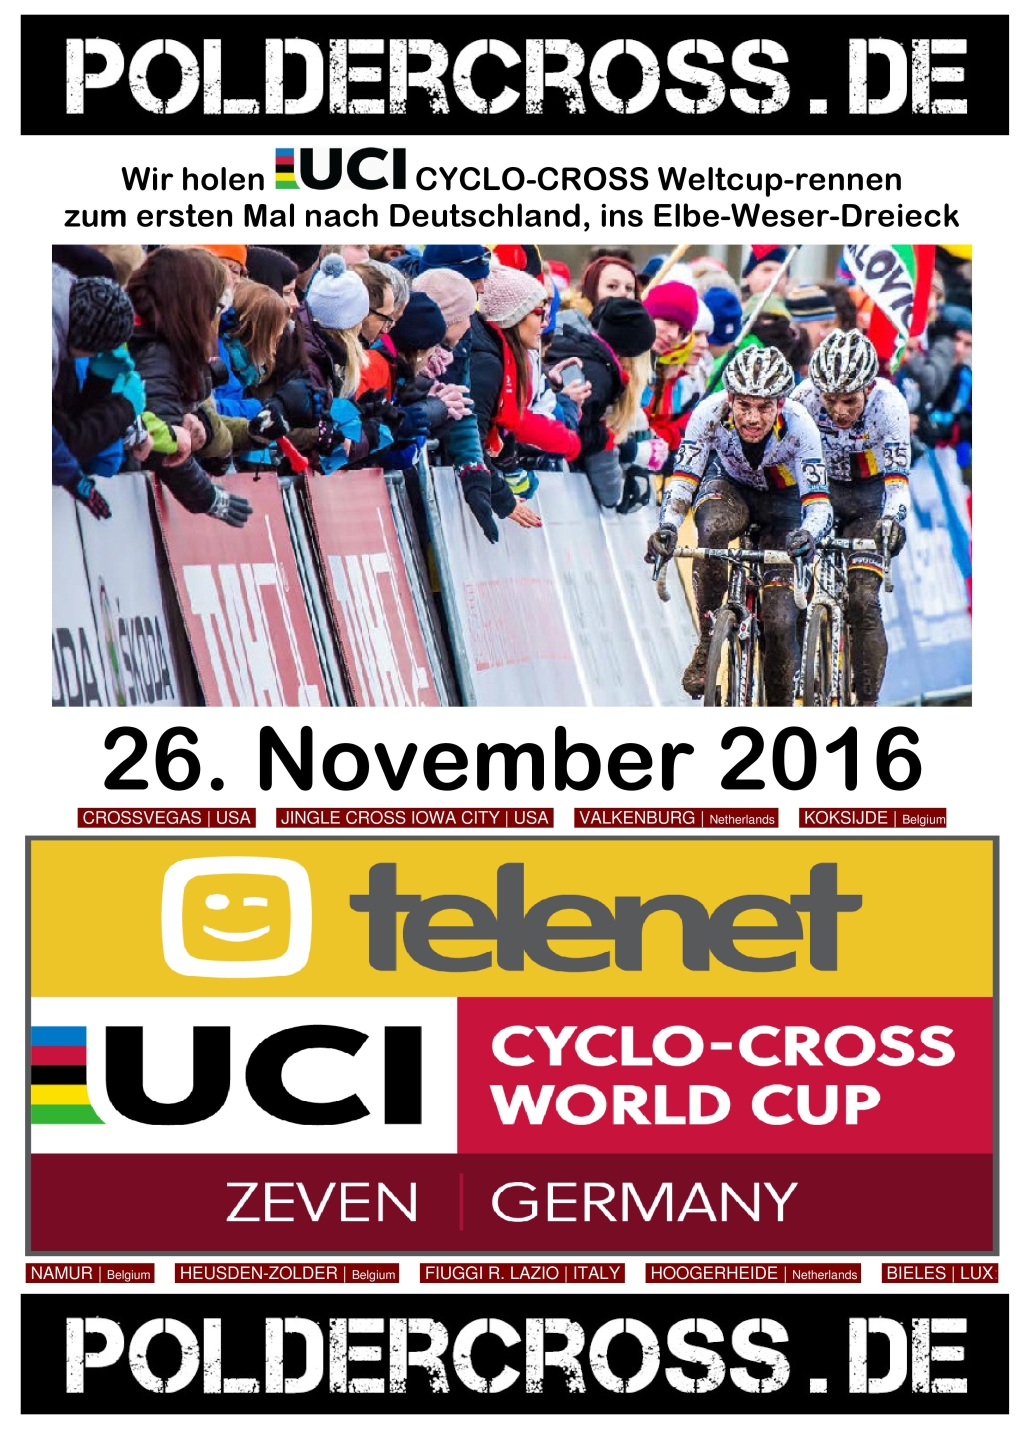 Poldercross.de - UCI Cyclo-cross Weltcup Zeven